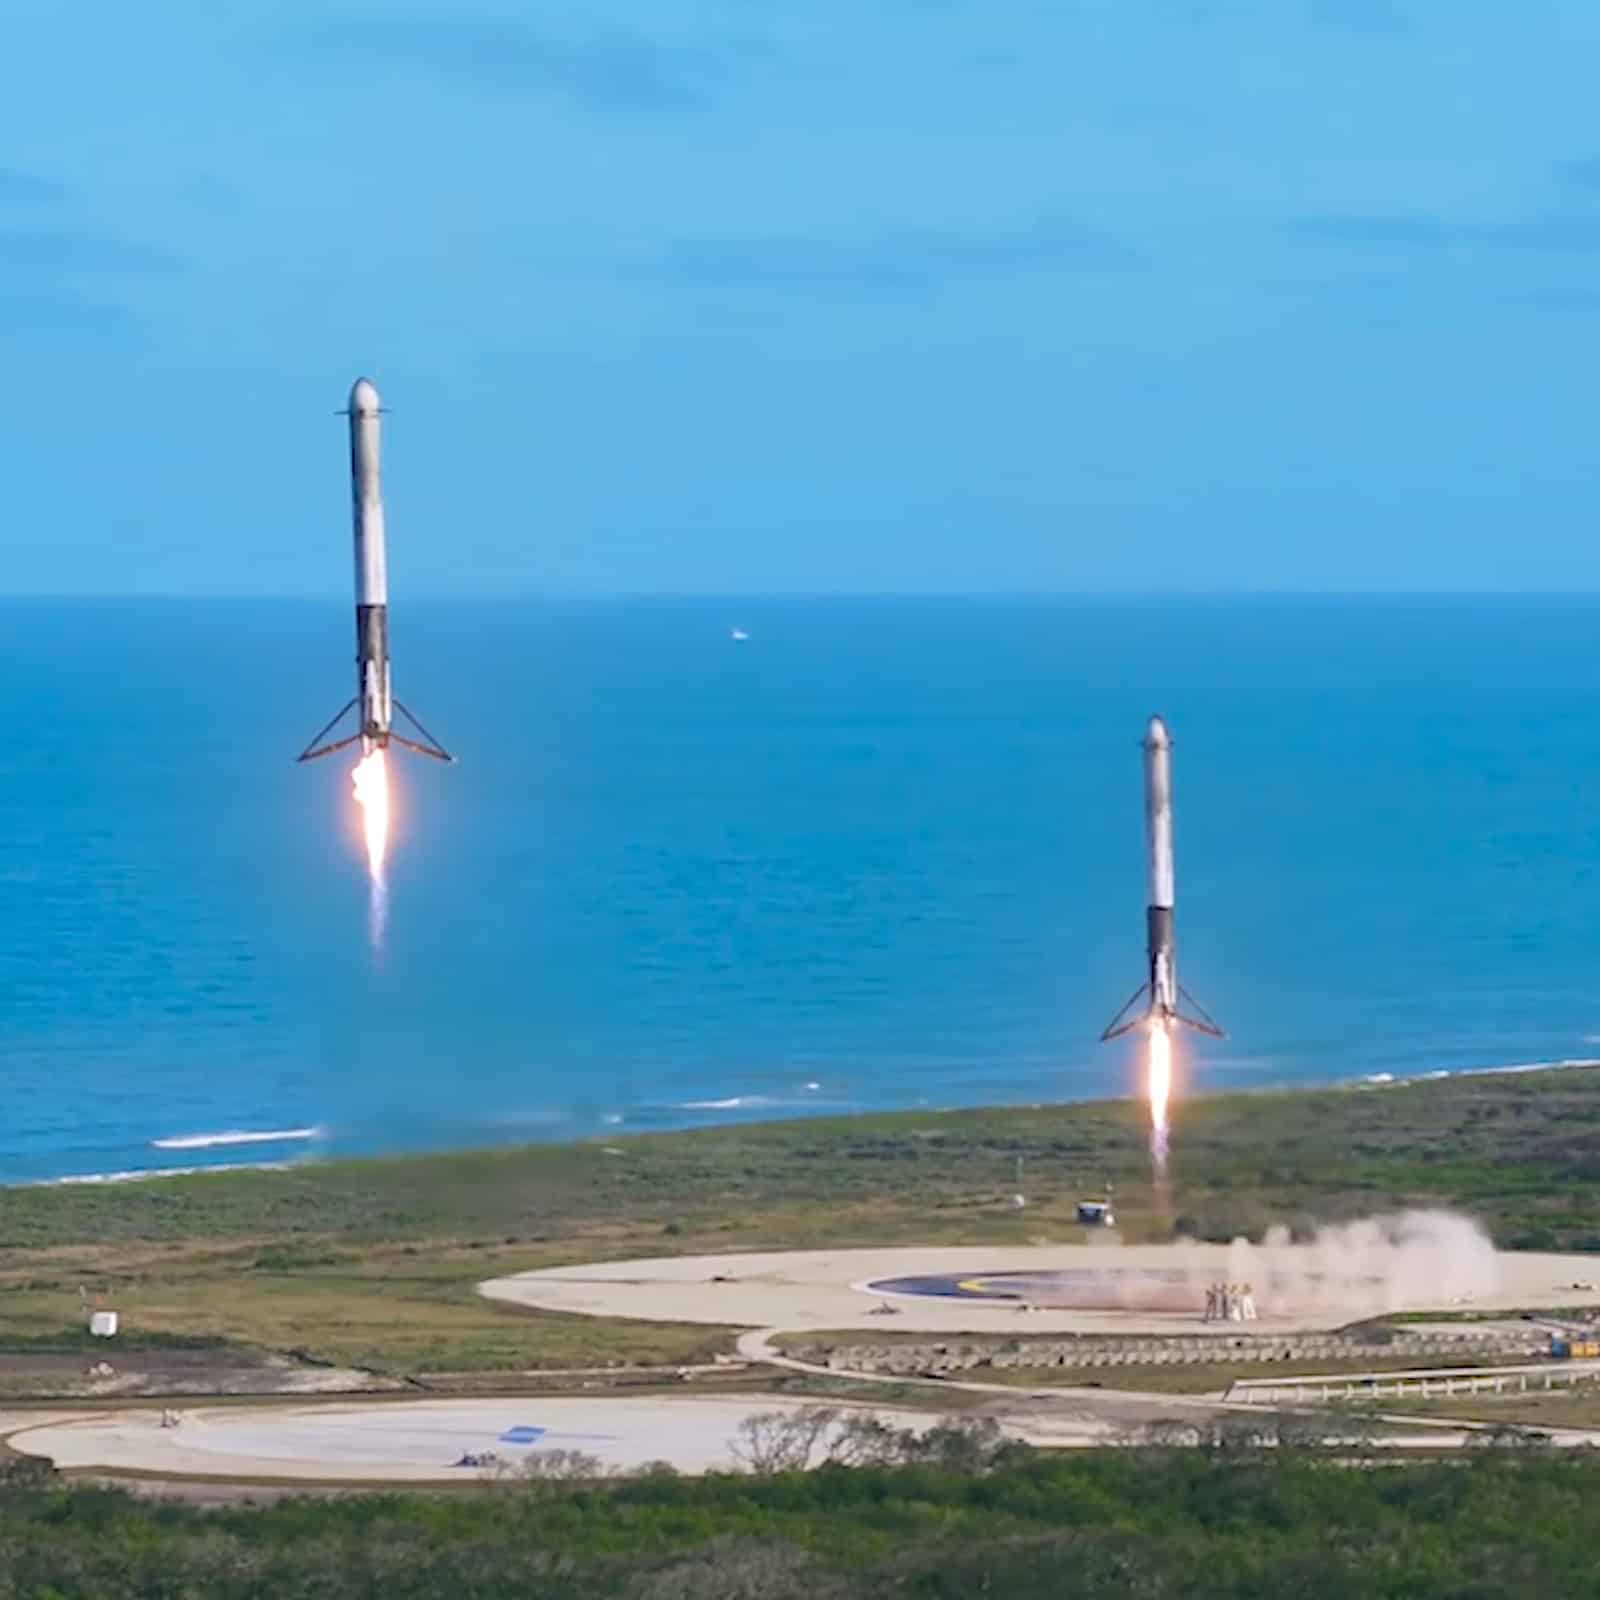 Des Falcon 9 en train d'atterrir après un lancement.